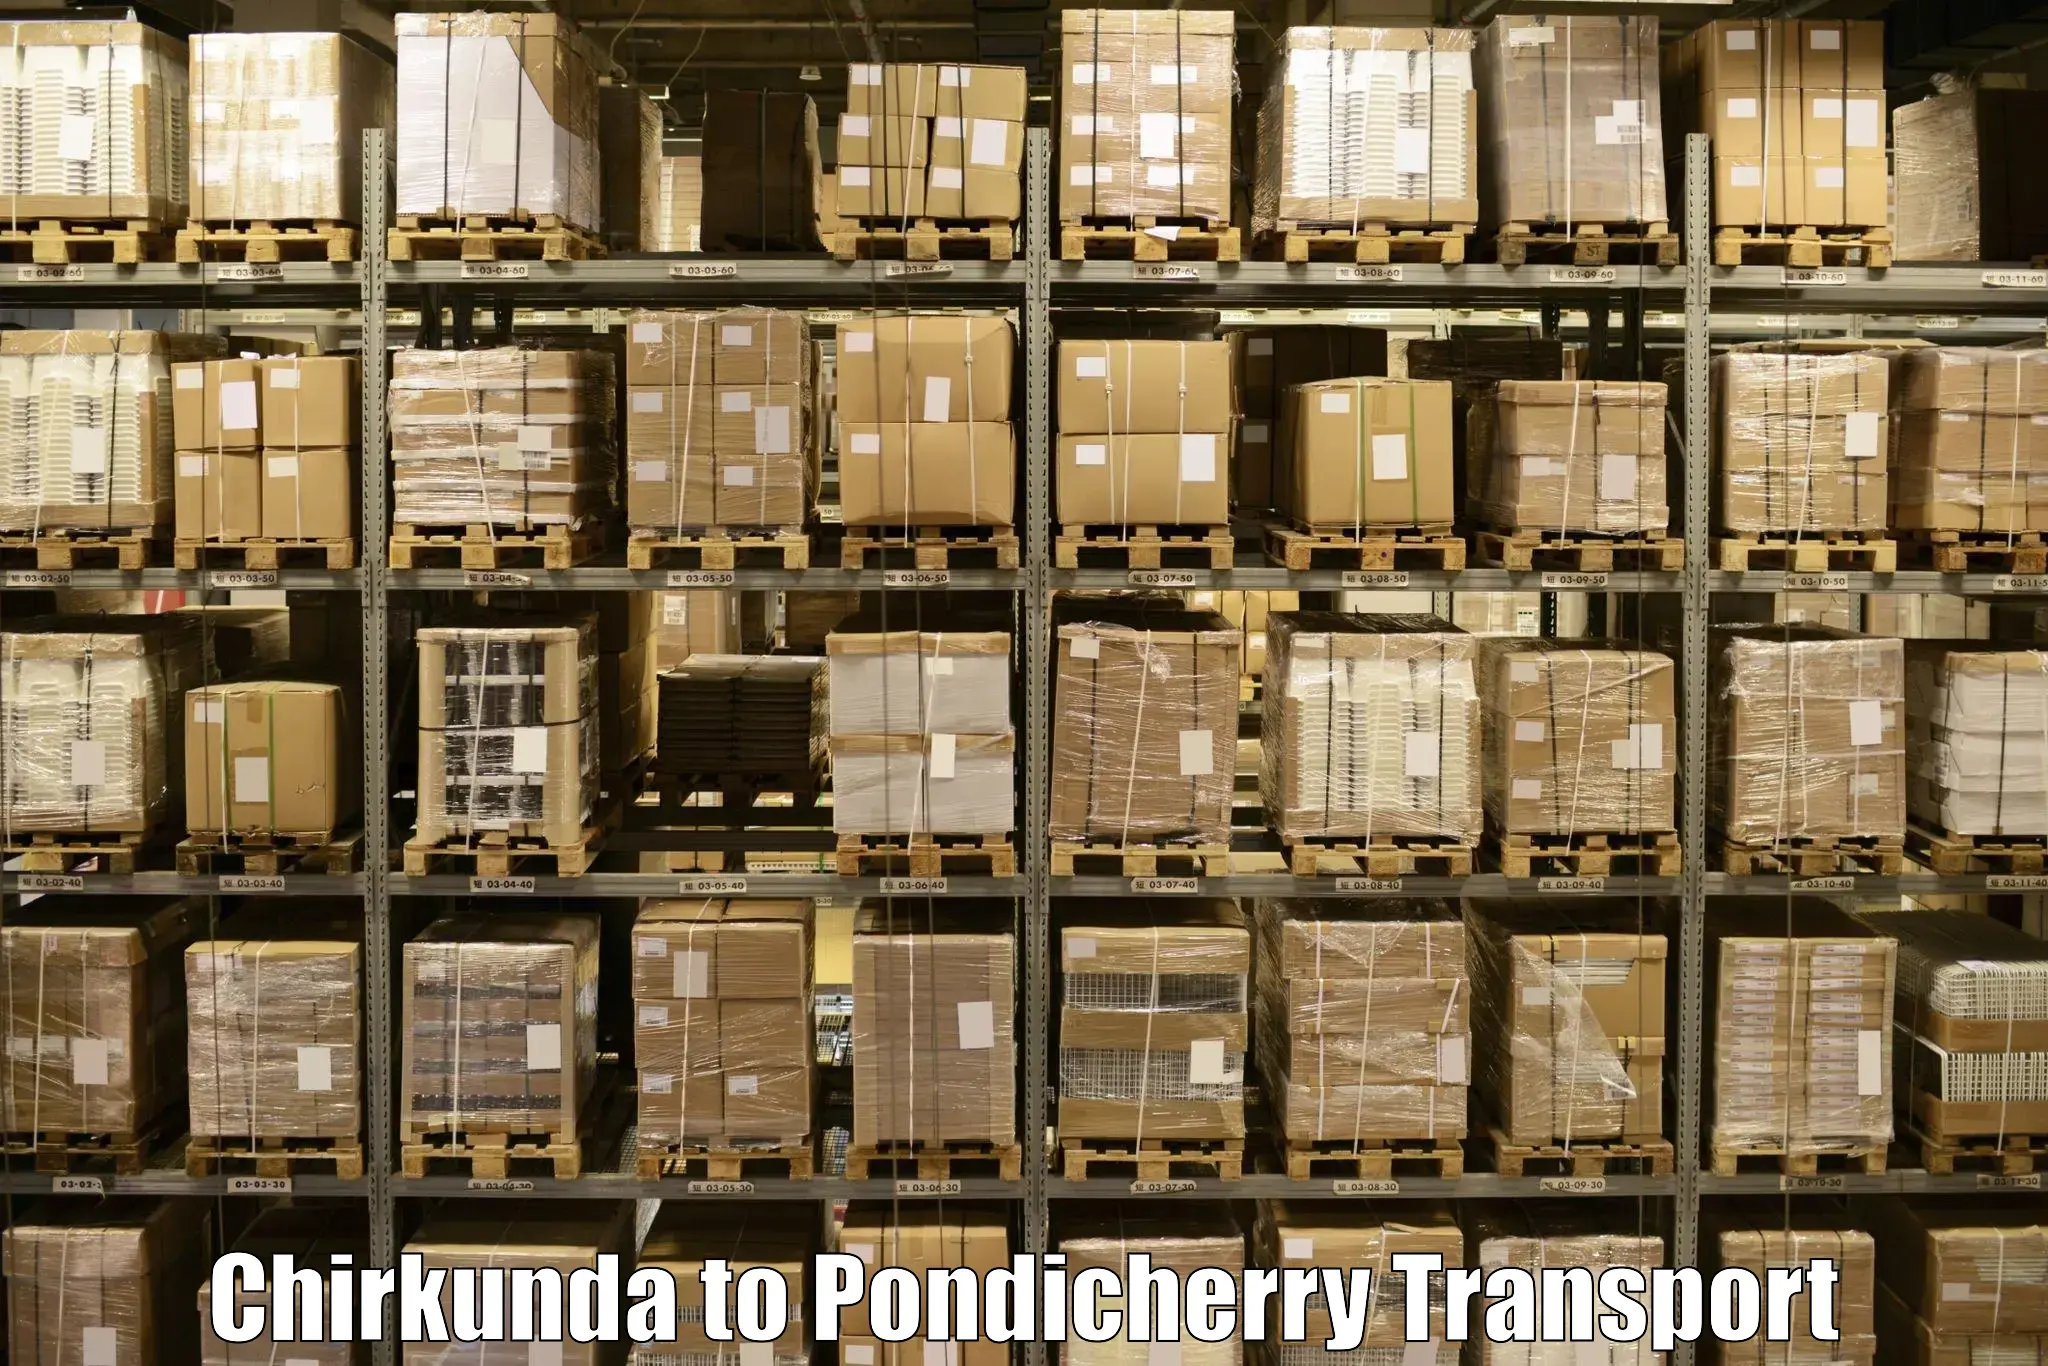 Bike shipping service Chirkunda to Pondicherry